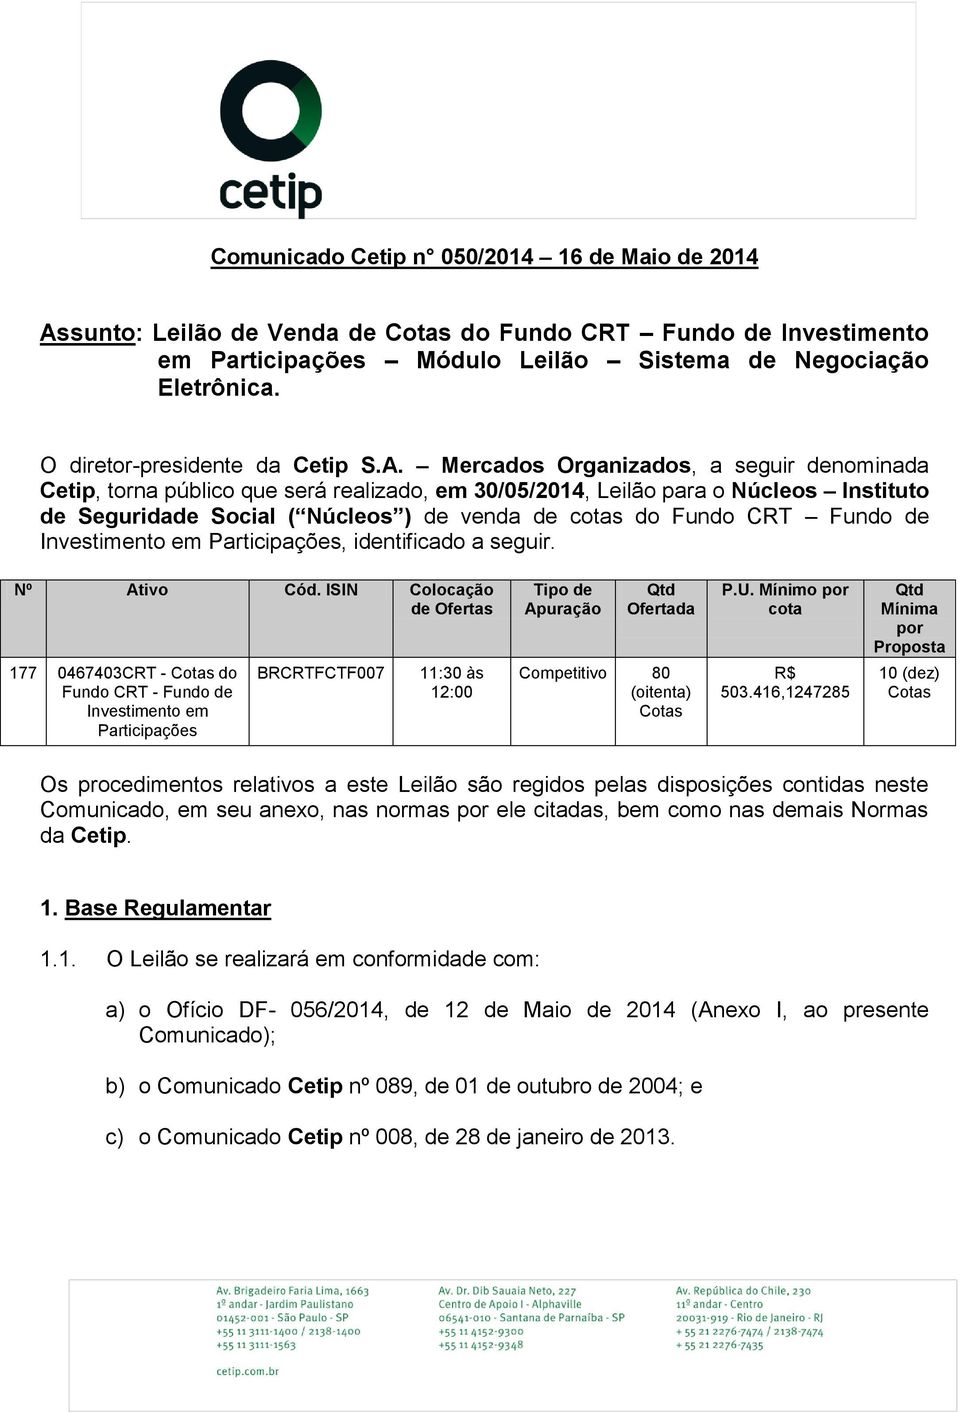 Mercados Organizados, a seguir denominada Cetip, torna público que será realizado, em 30/05/2014, Leilão para o Núcleos Instituto de Seguridade Social ( Núcleos ) de venda de cotas do Fundo CRT Fundo